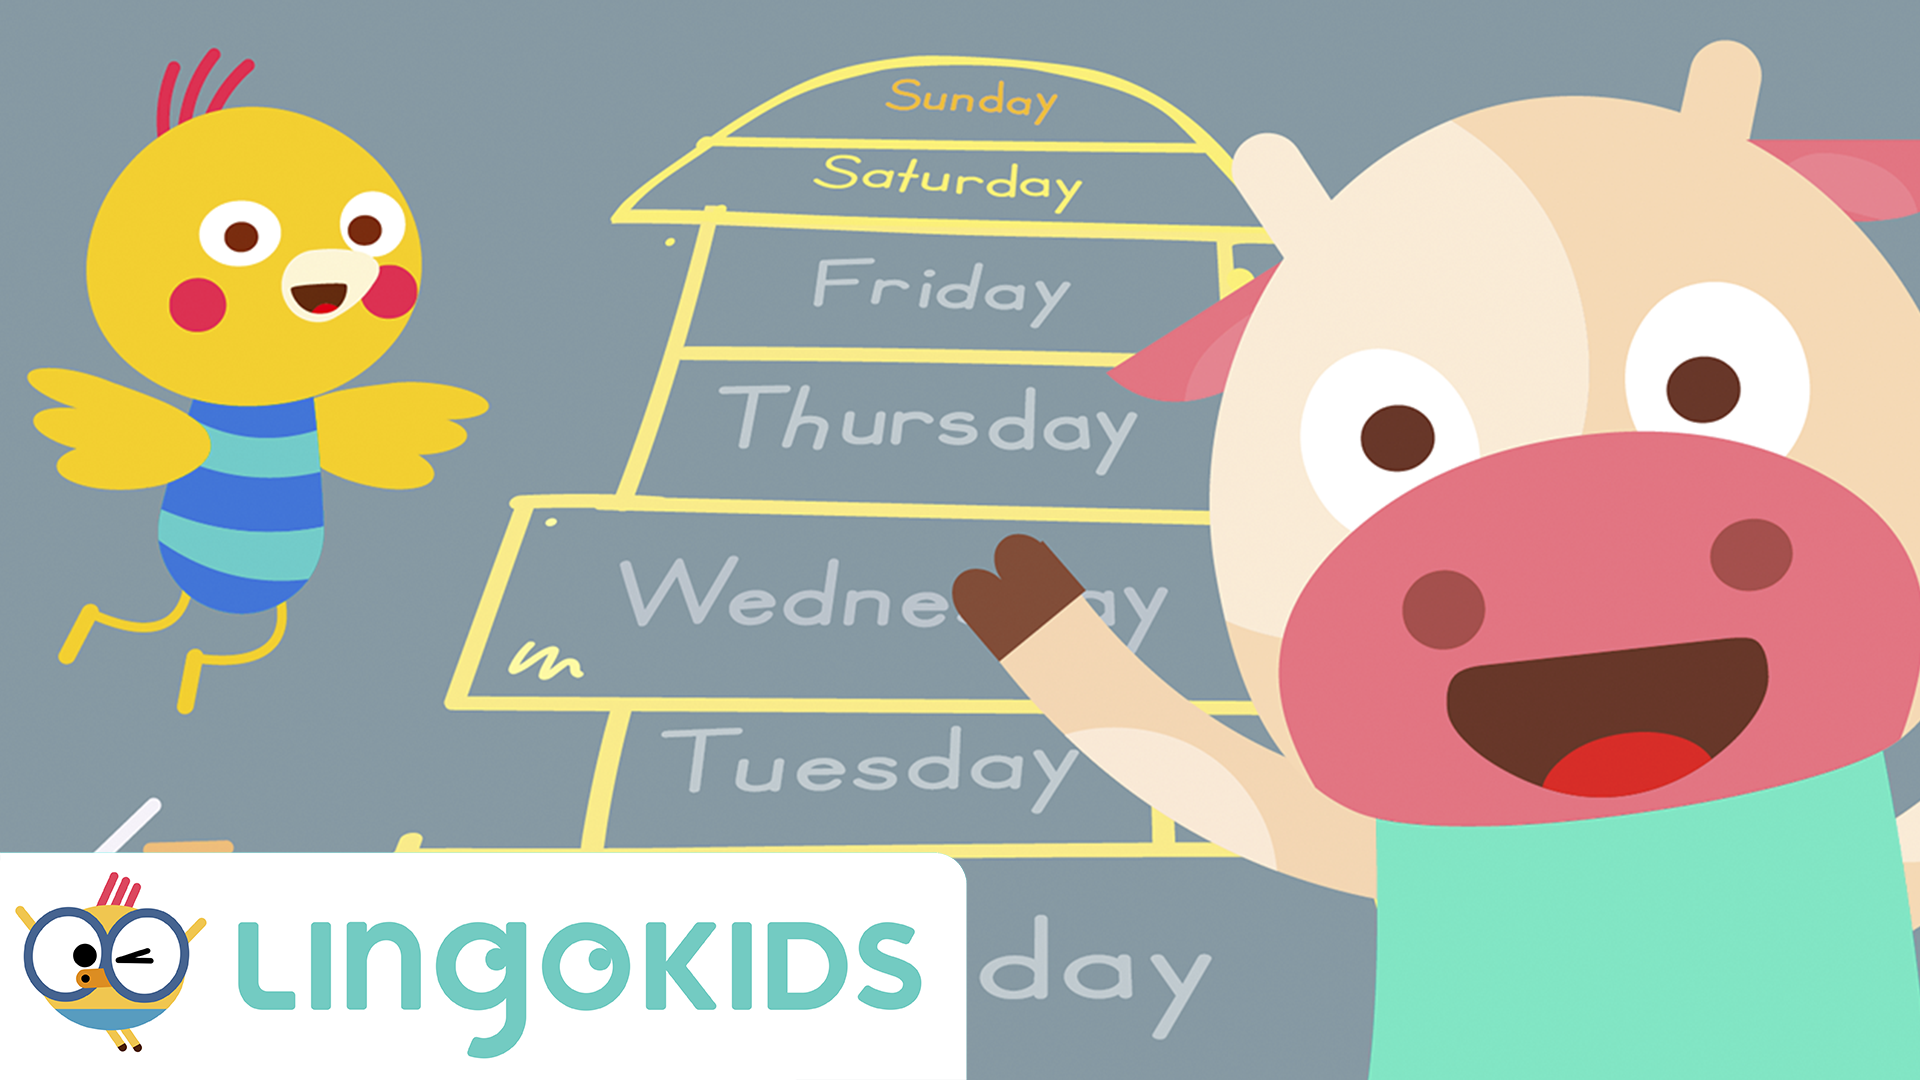 Days of the week: Dias da semana em inglês - Estudo Kids